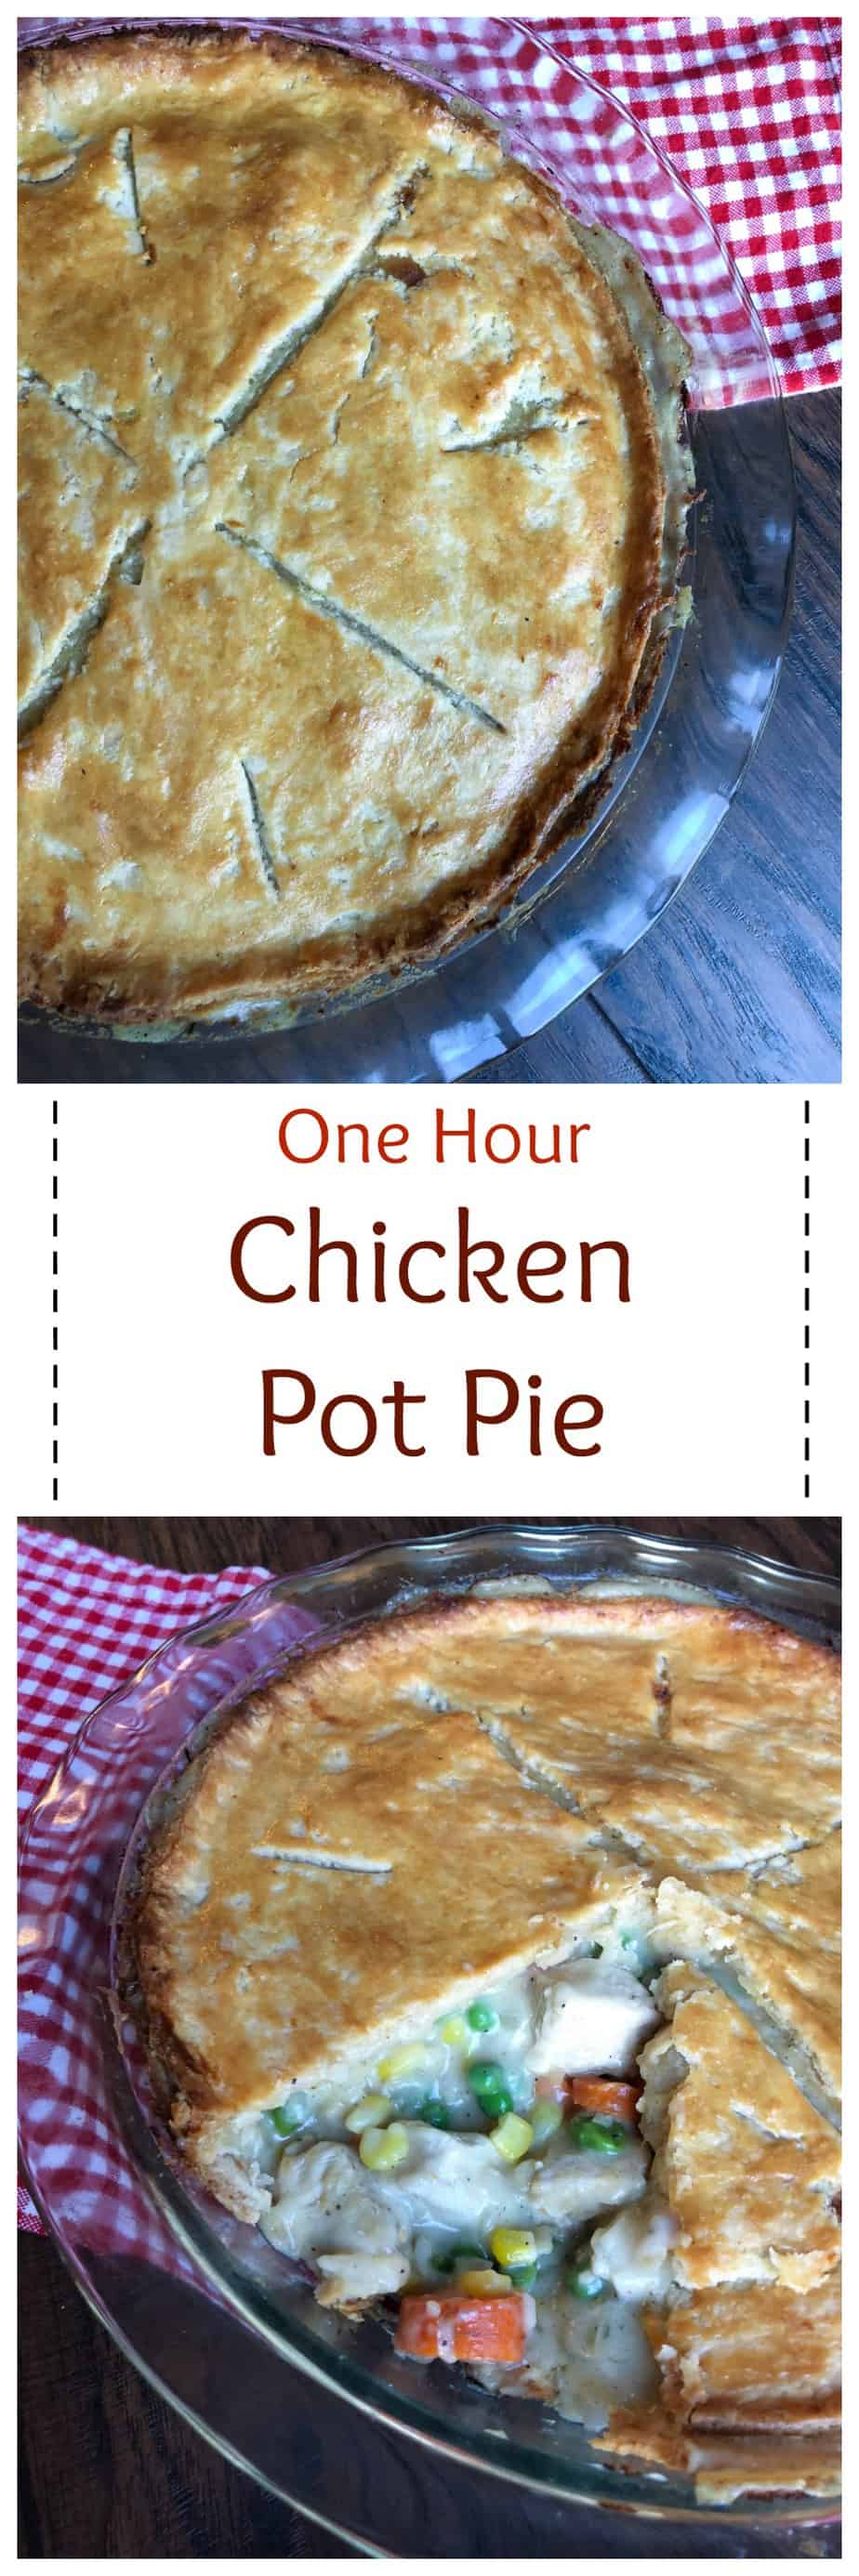 One Hour Chicken Pot Pie